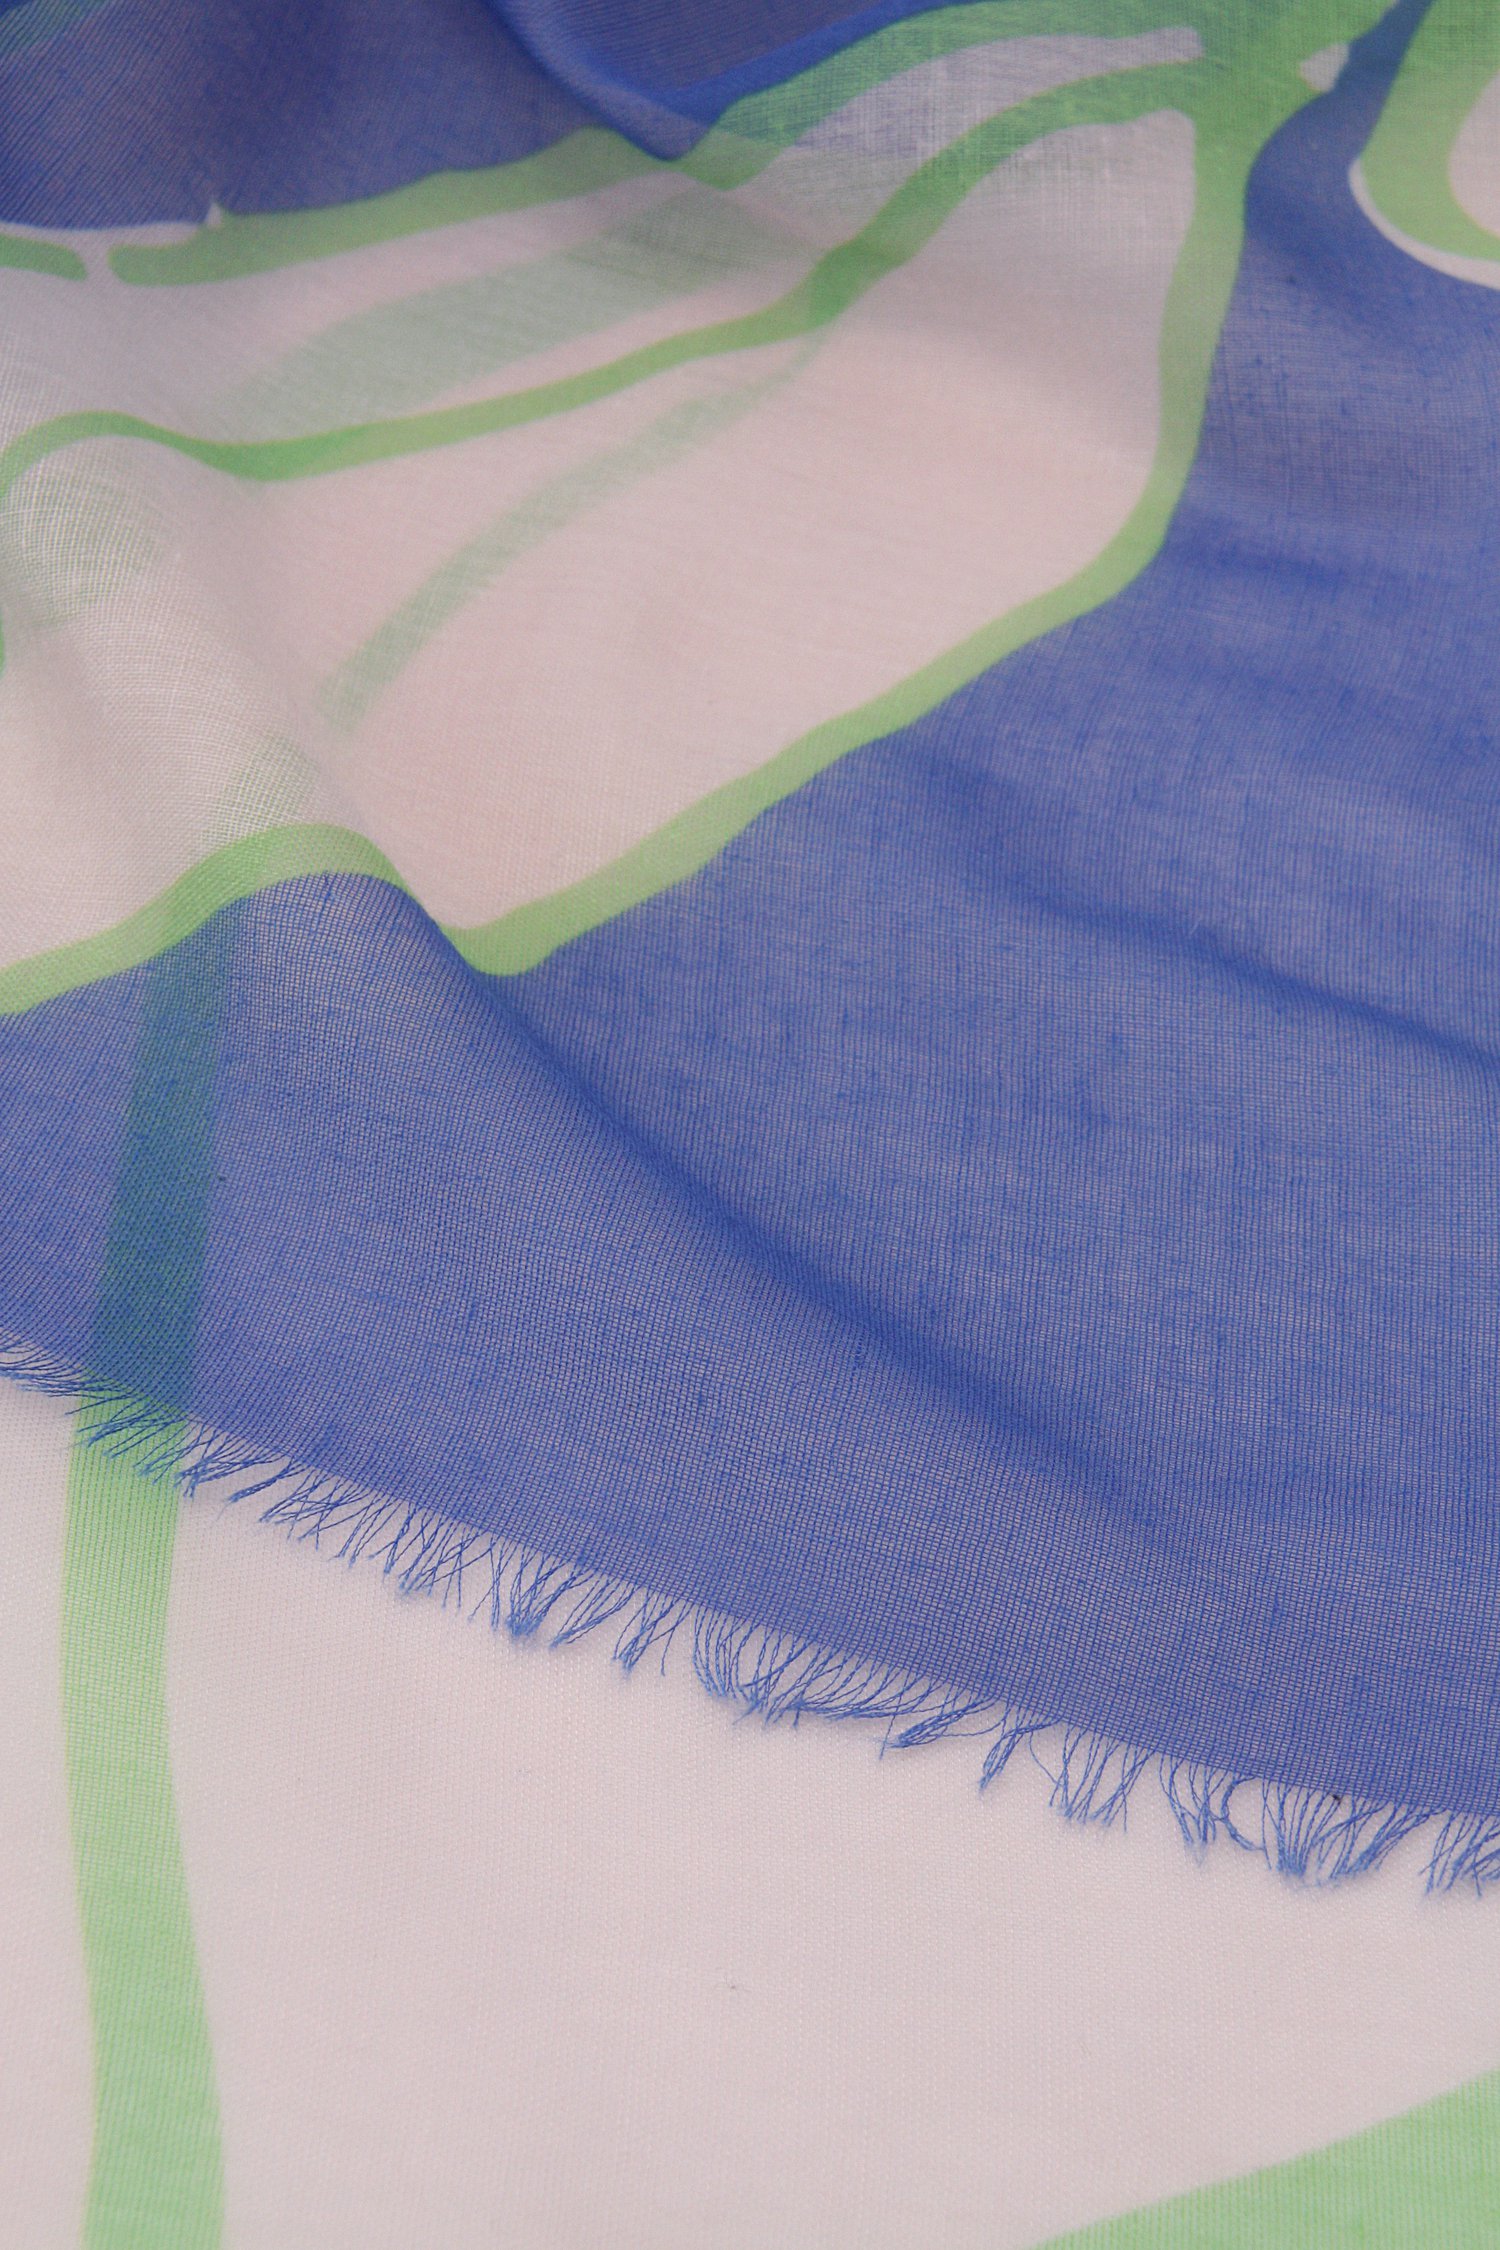 Sjaaltje met groen-blauwe print van Liberty Island voor Dames